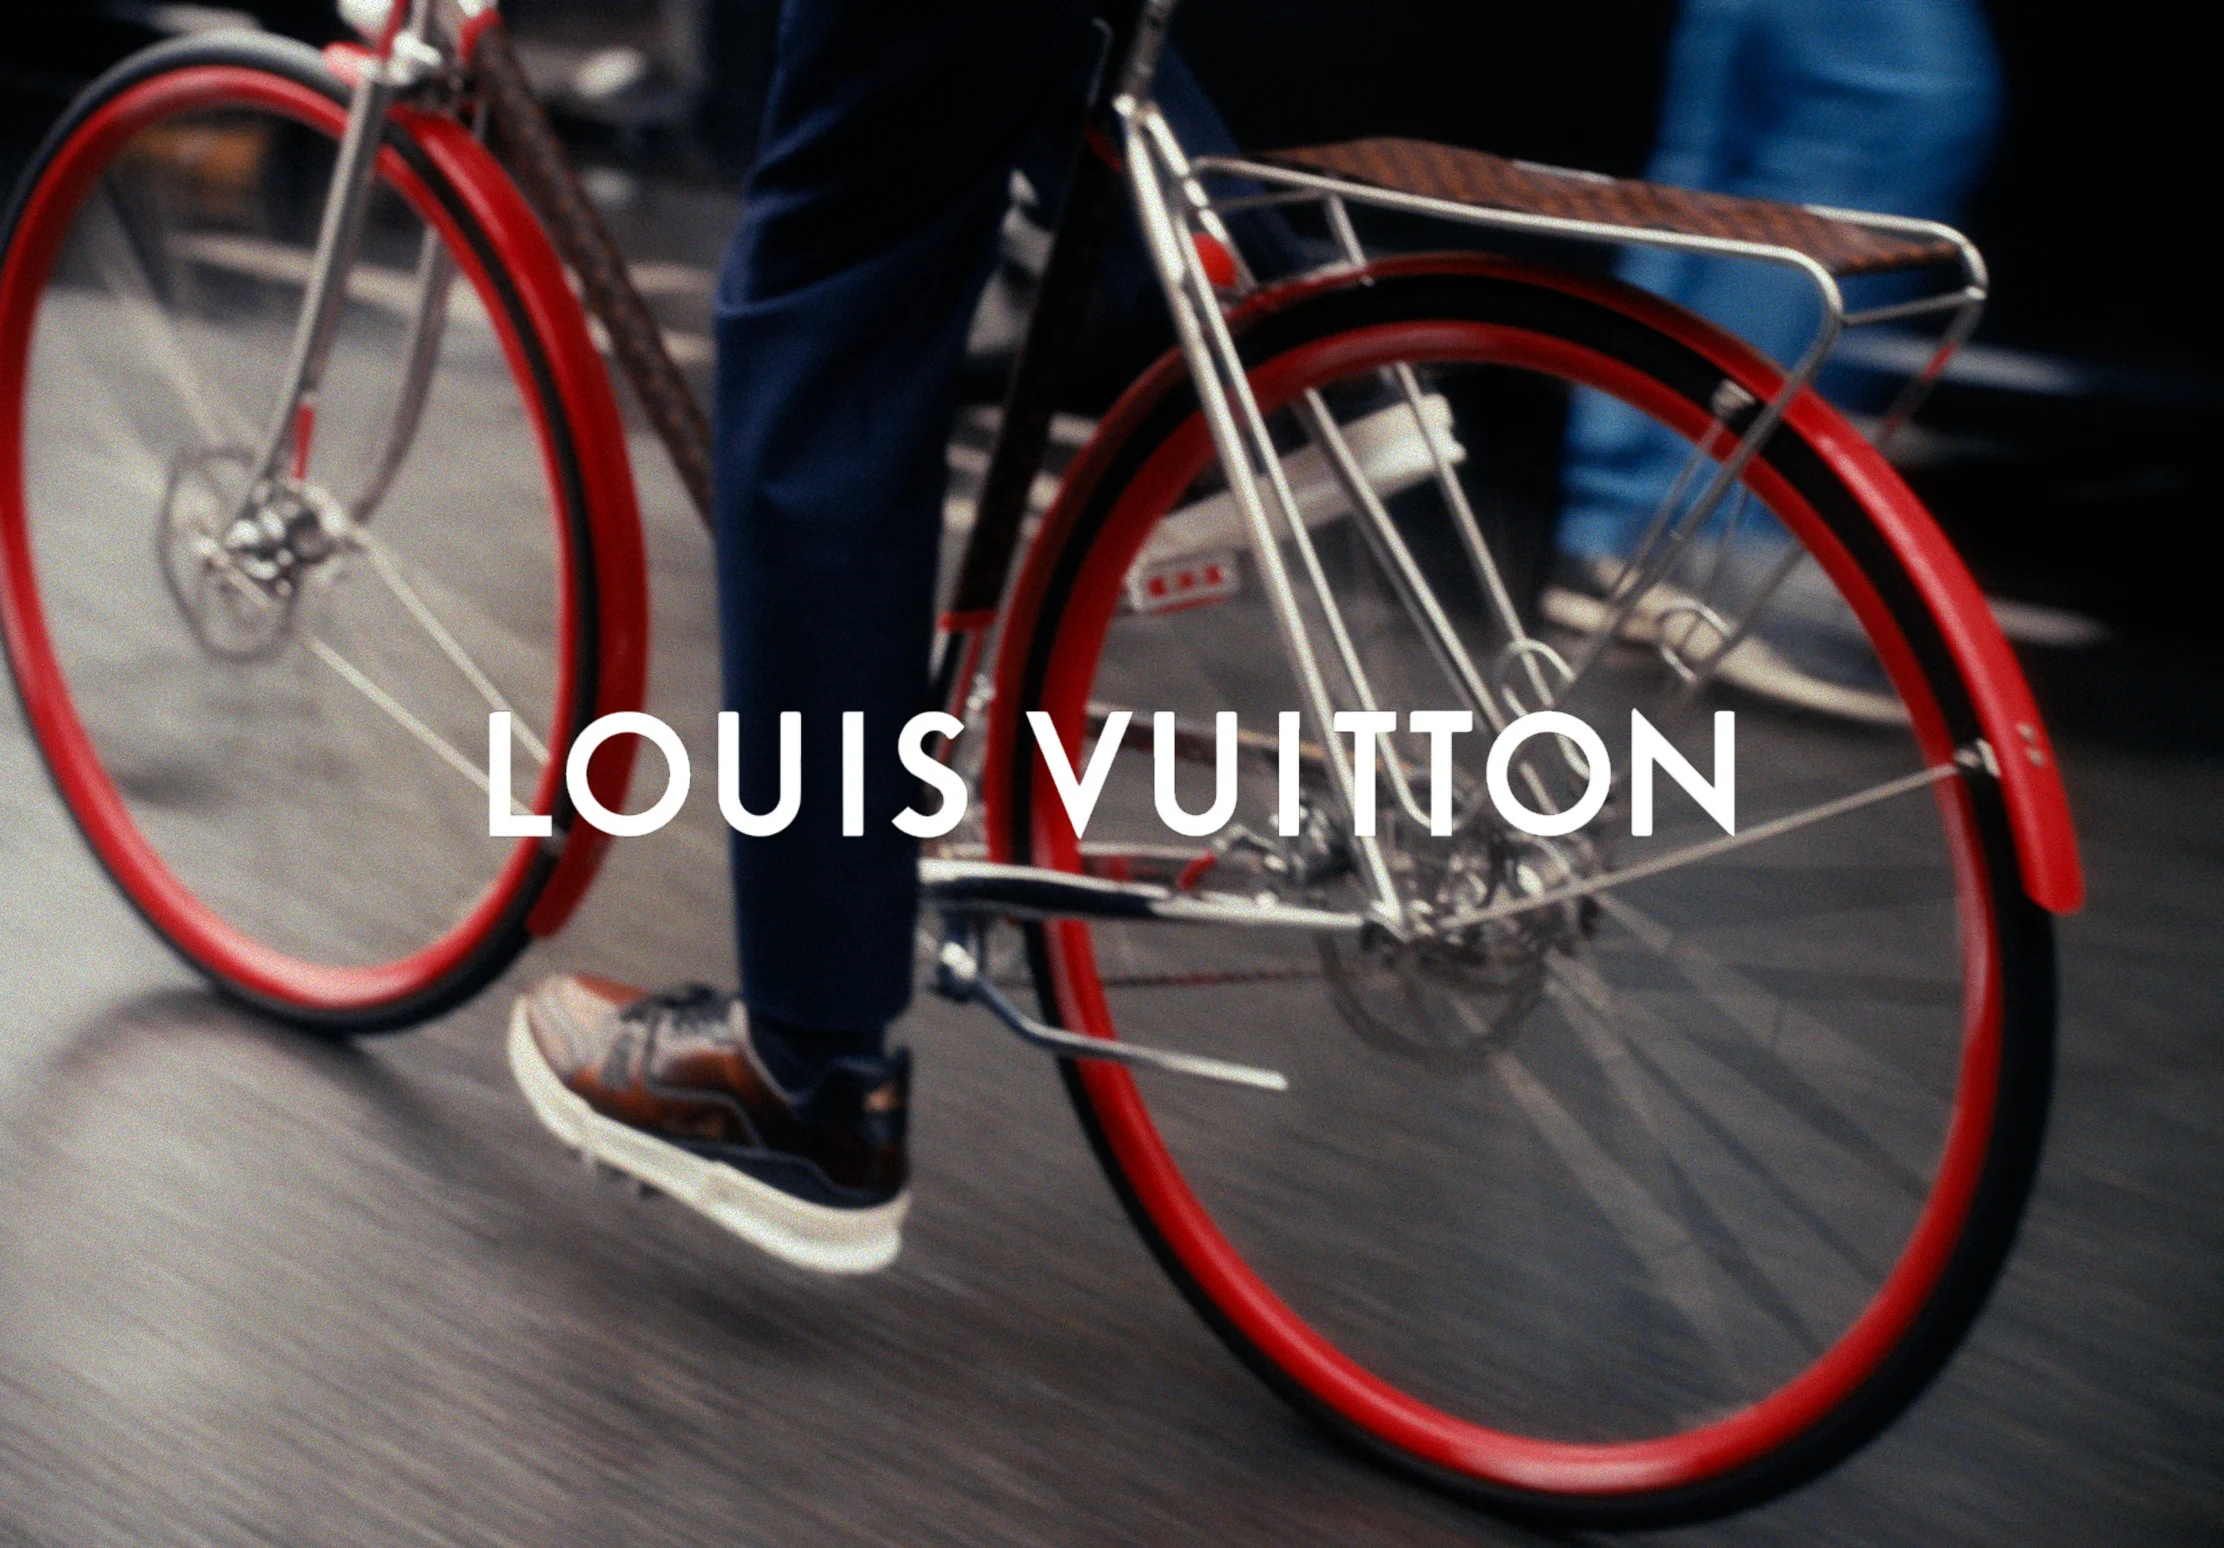 Louis Vuitton Bike Collection Photos